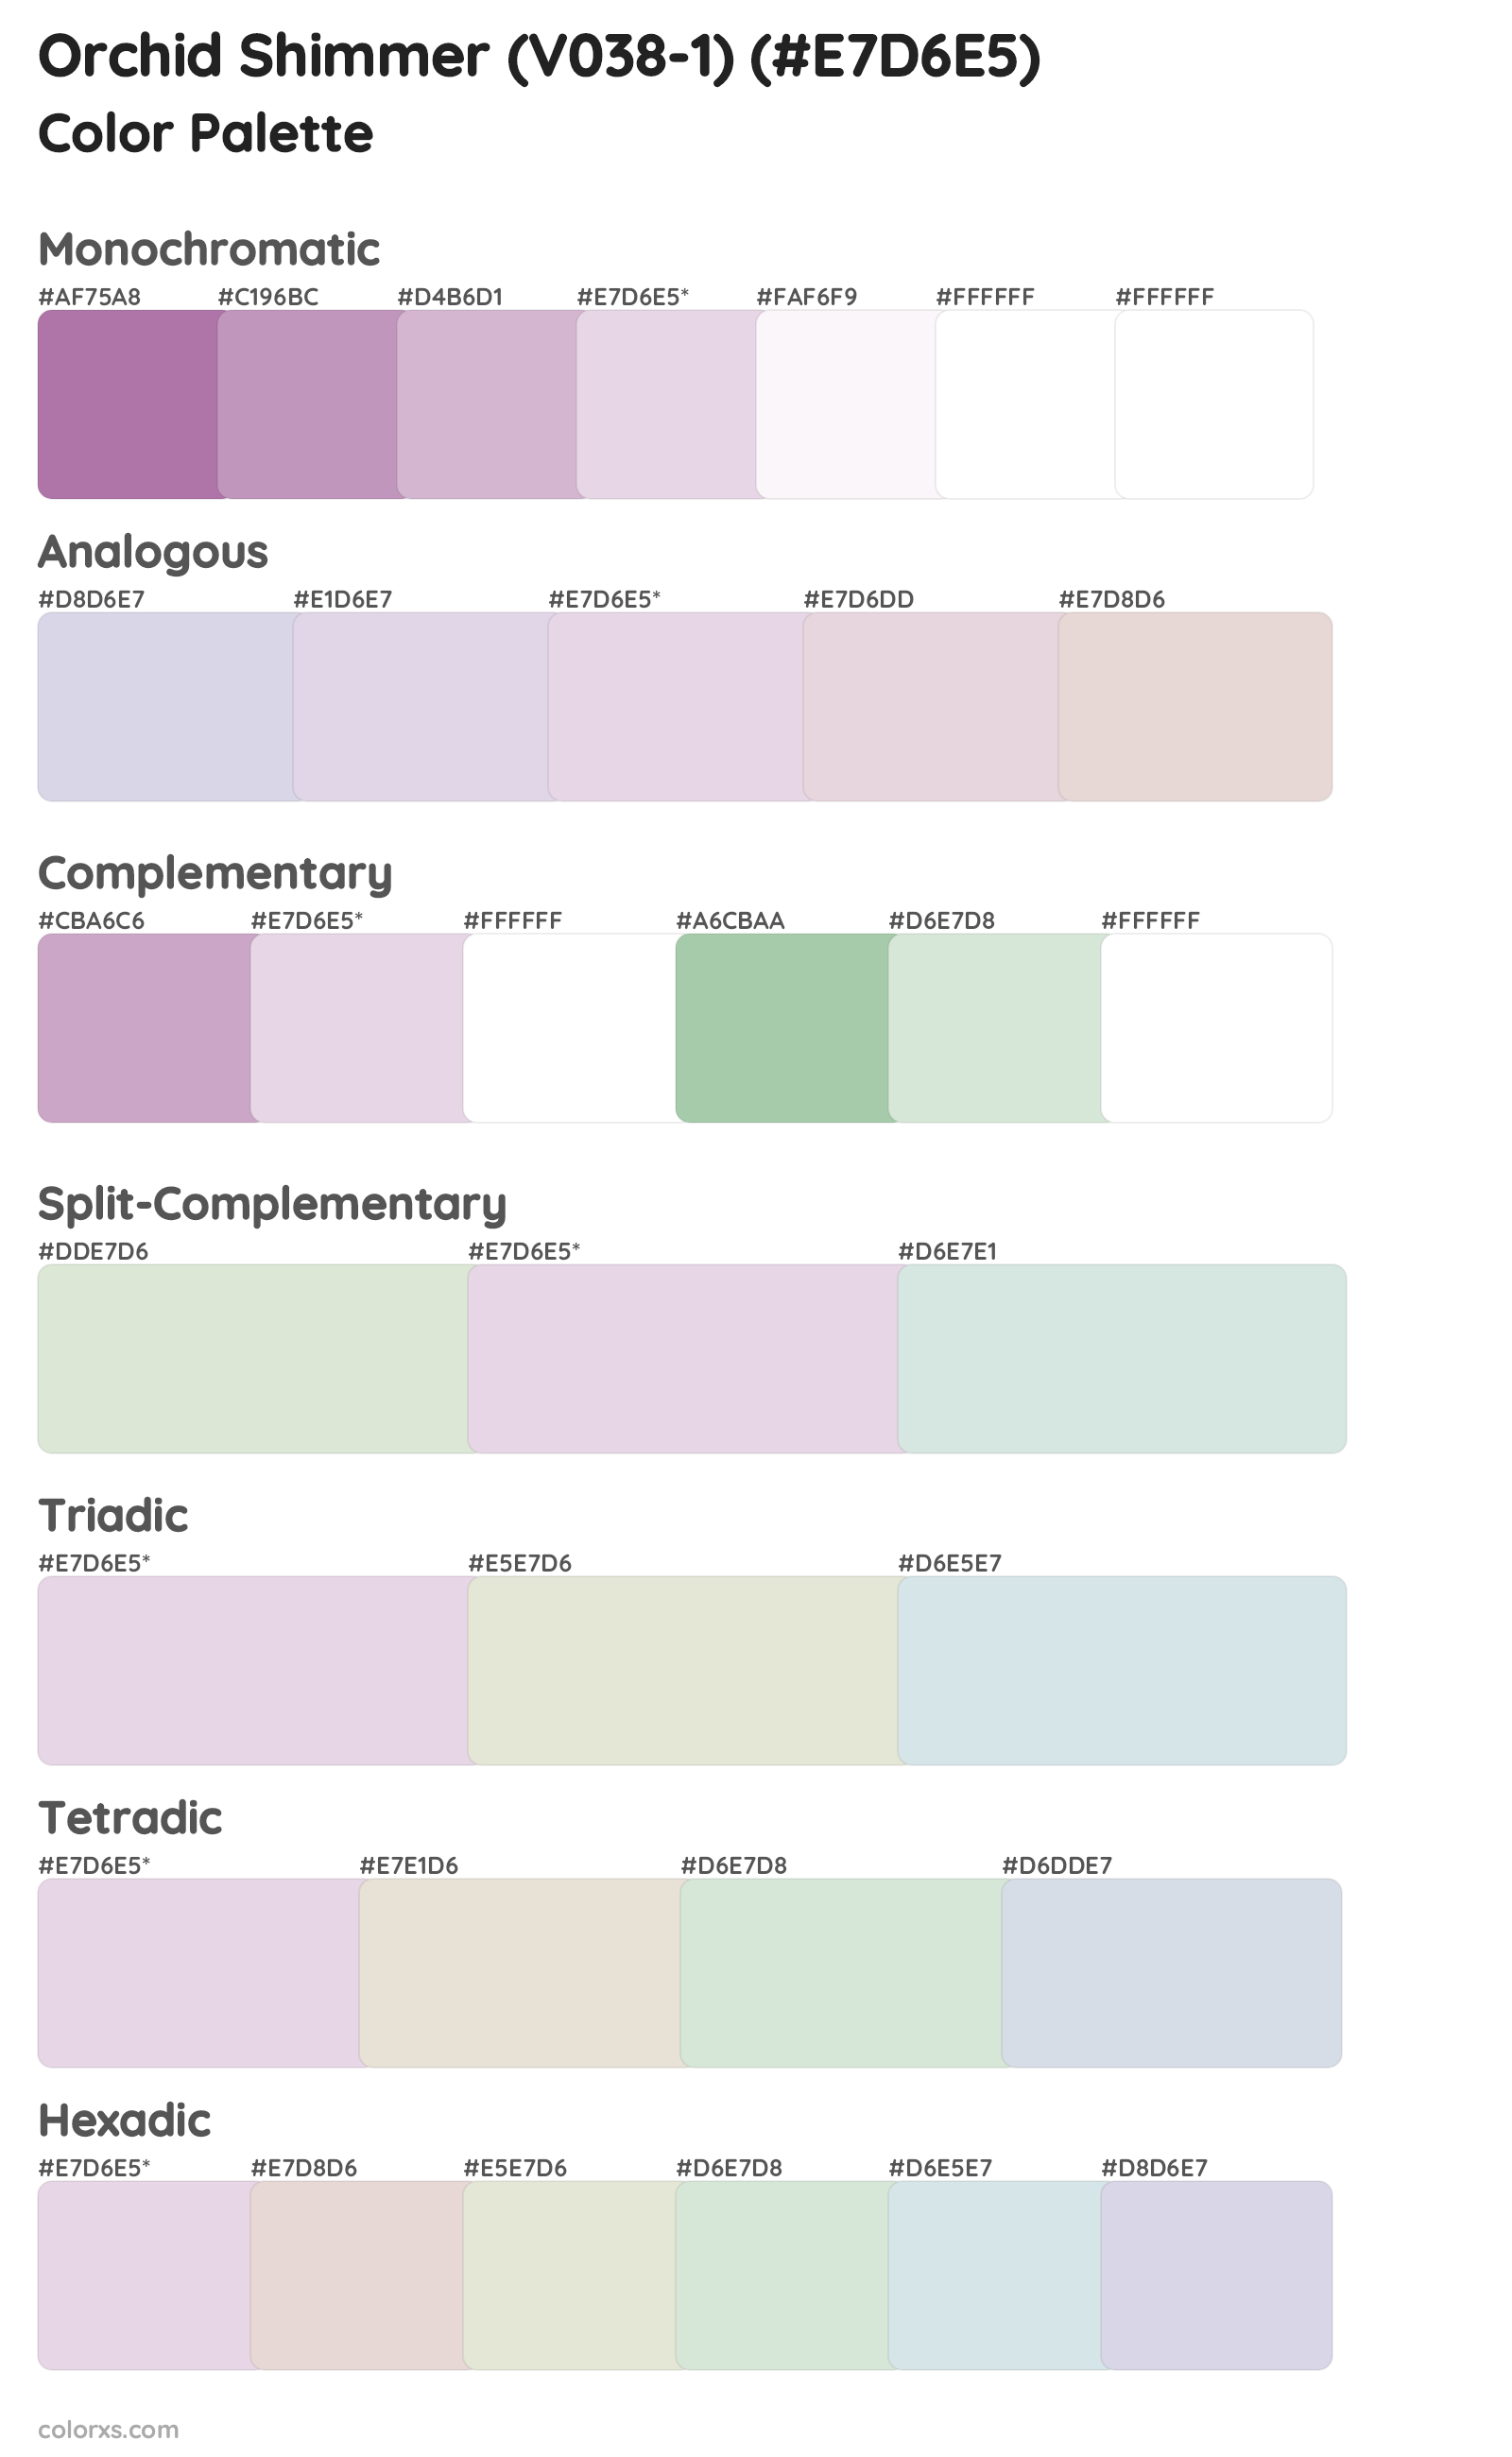 Orchid Shimmer (V038-1) Color Scheme Palettes